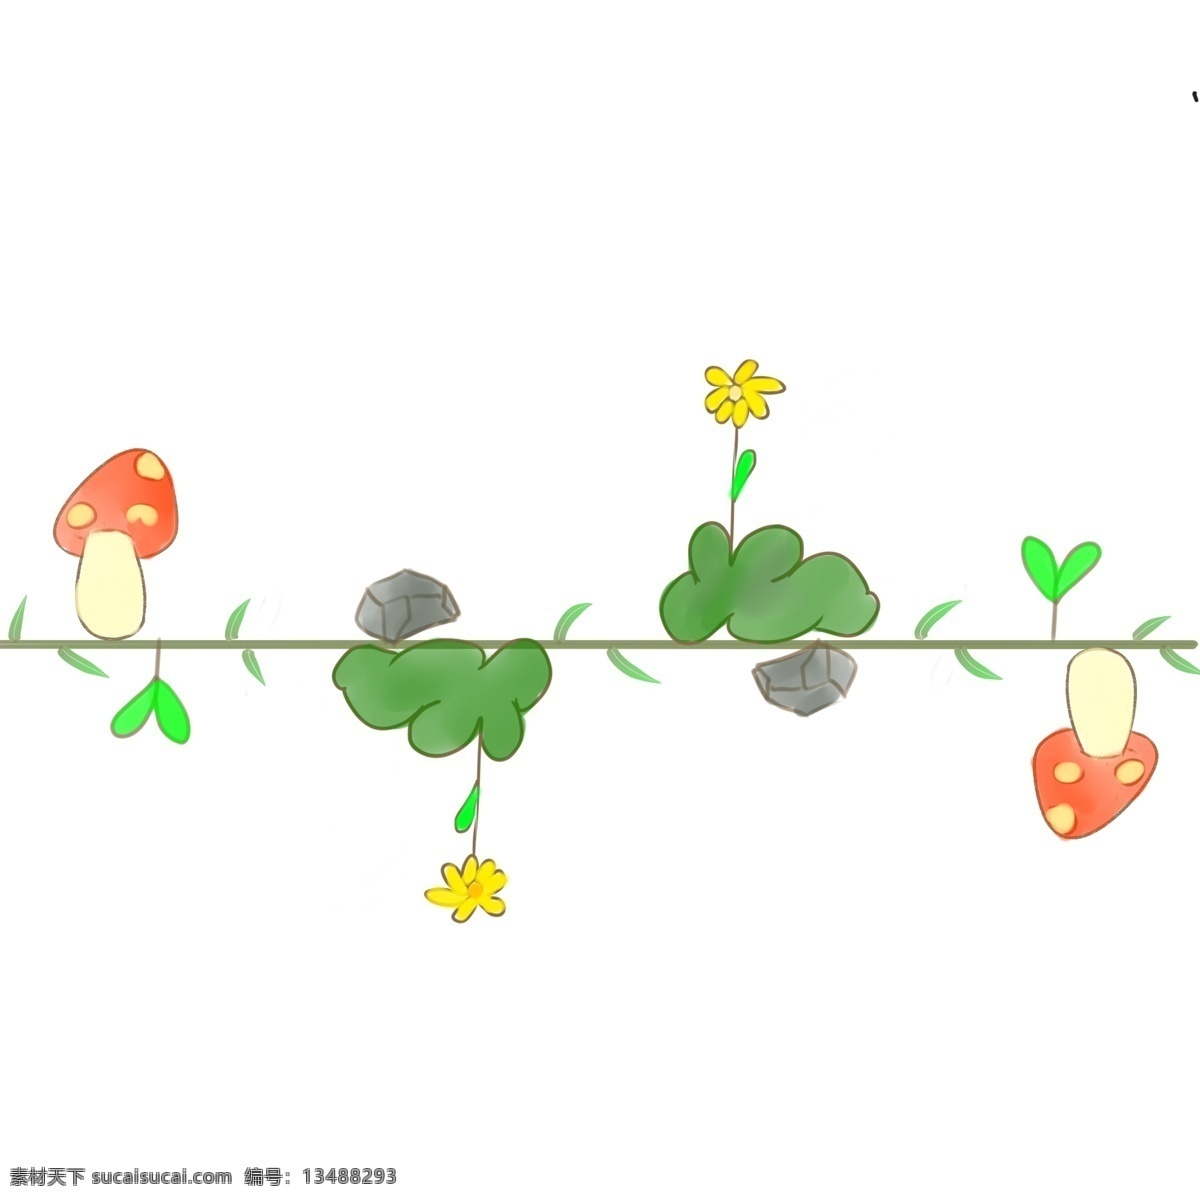 卡通 植物 小花 分割线 卡通分割线 蘑菇装饰插画 卡通插画 可爱分割线 漂亮的分割线